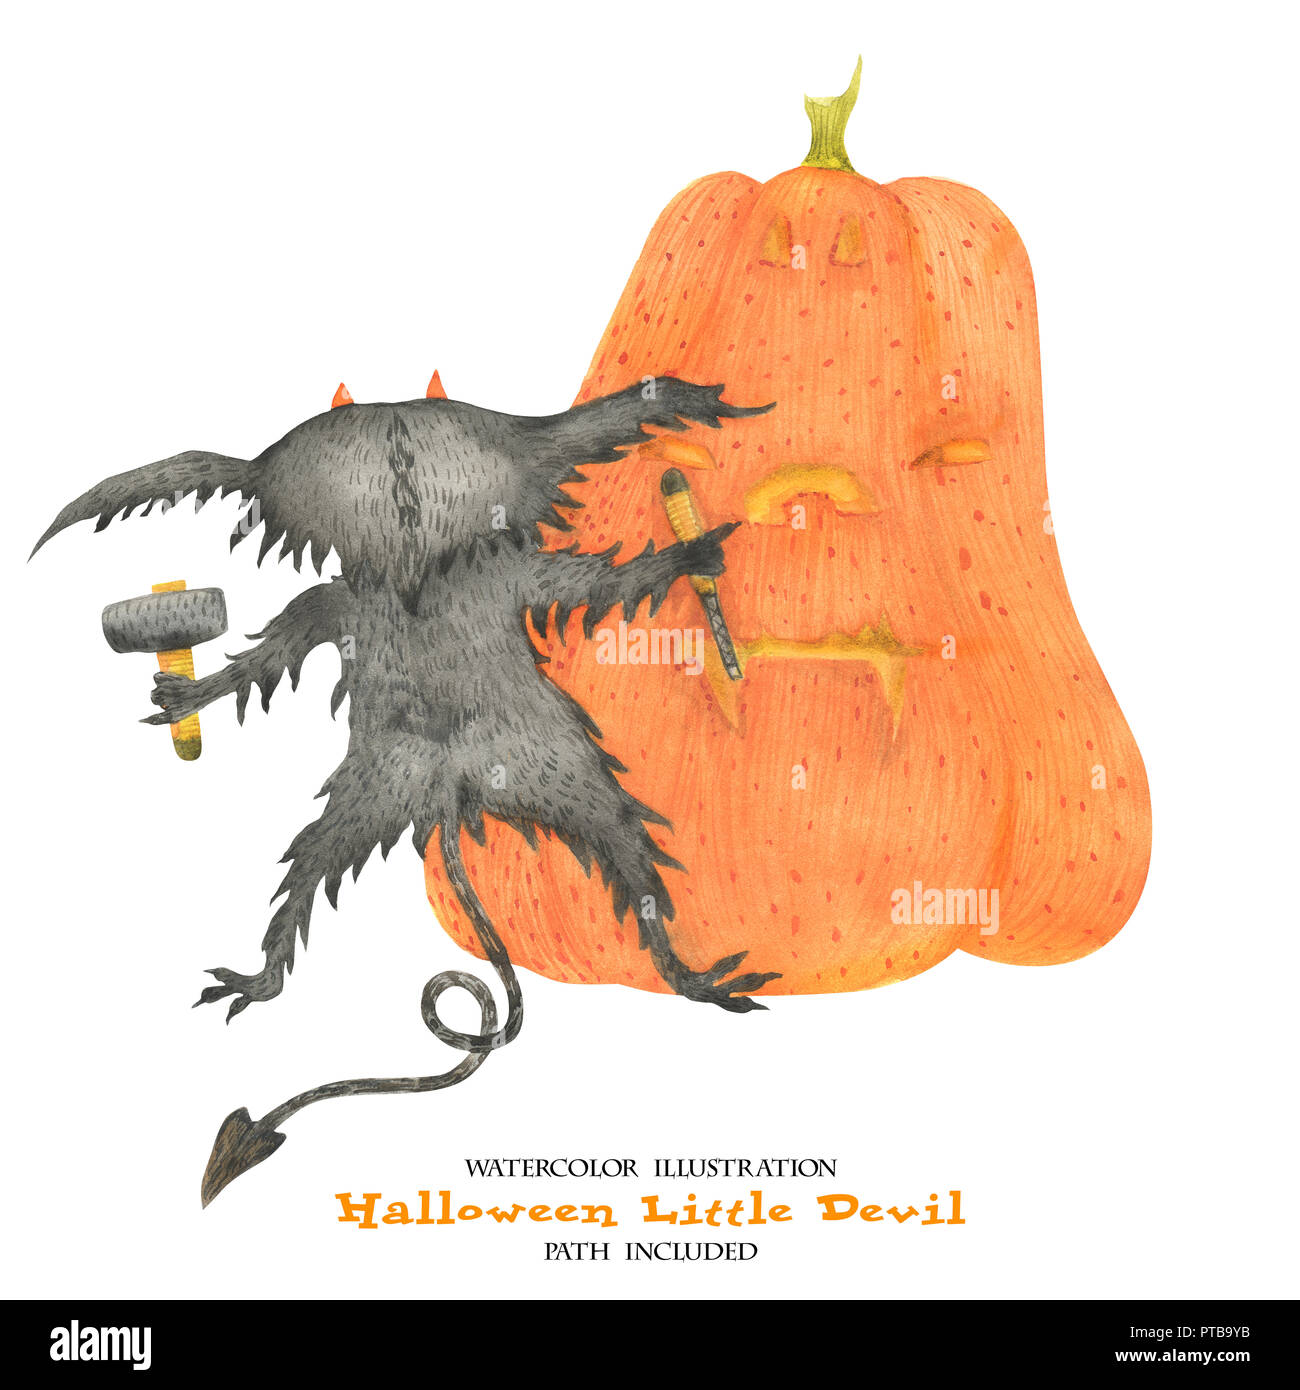 Illustration à l'aquarelle pour l'Halloween. Petit diable cisèle un potiron. Isoalted, chemin inclus Banque D'Images